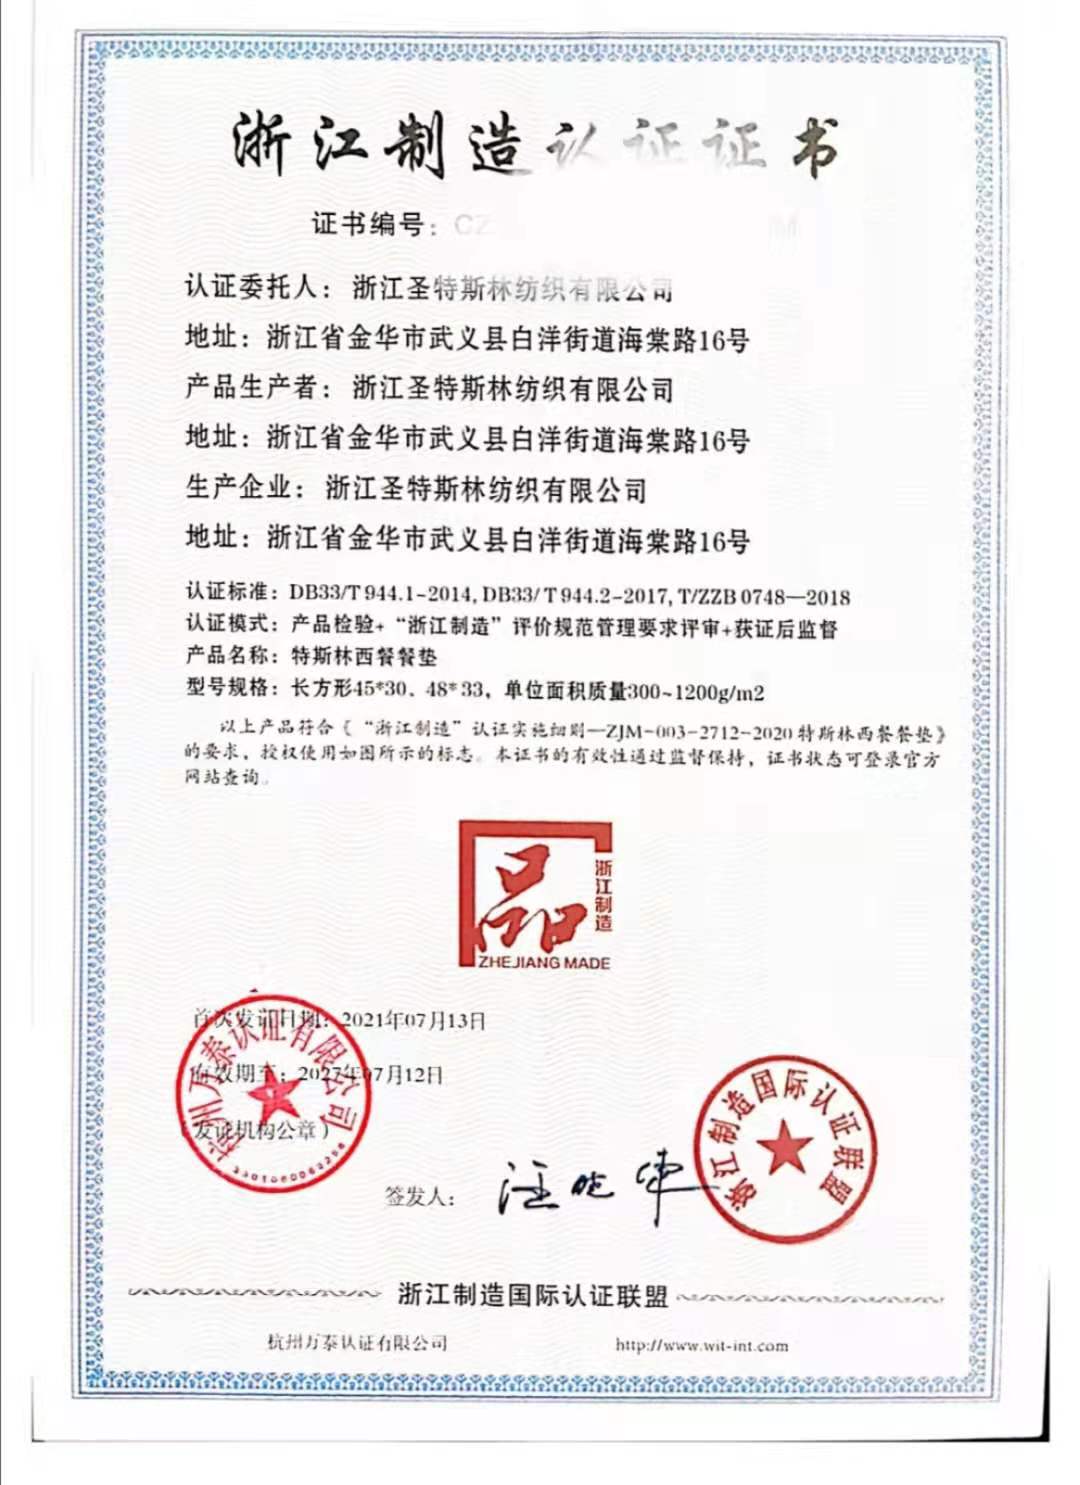 浙江圣特斯林纺织有限公司通过万泰认证获得浙江制造认证证书